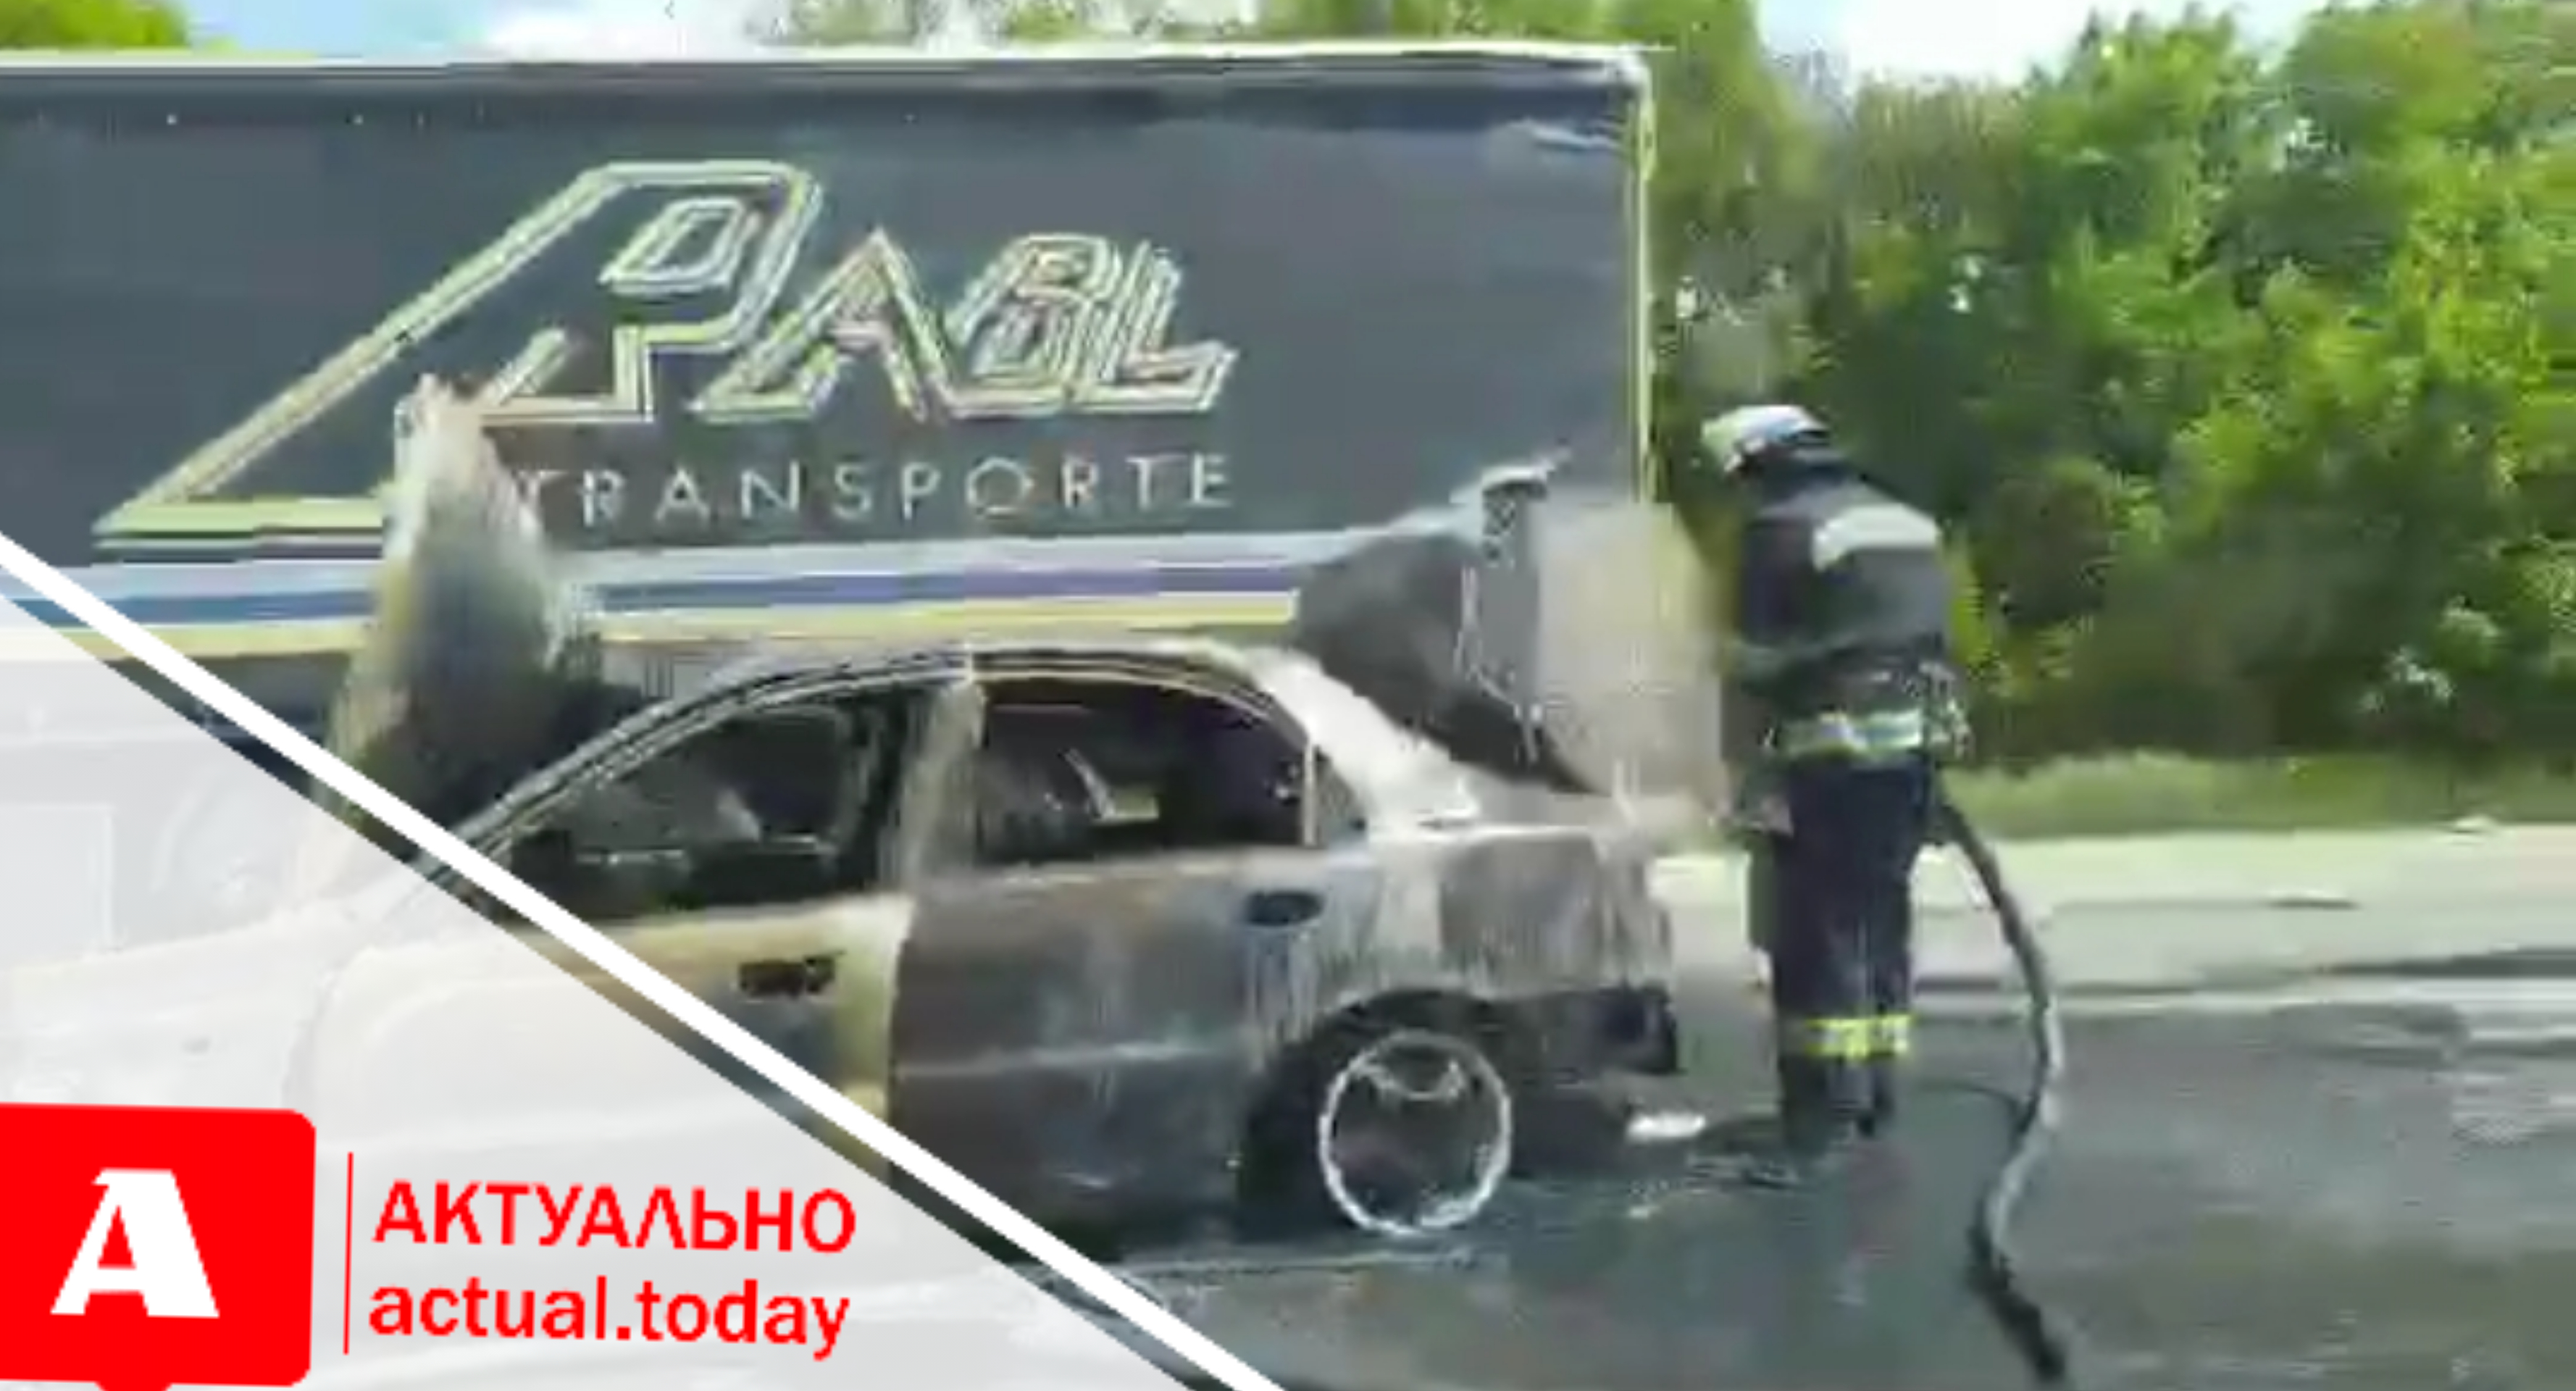 Стали известны подробности ДТП со сгоревшей машиной на запорожской трассе: есть пострадавшие (ФОТО)